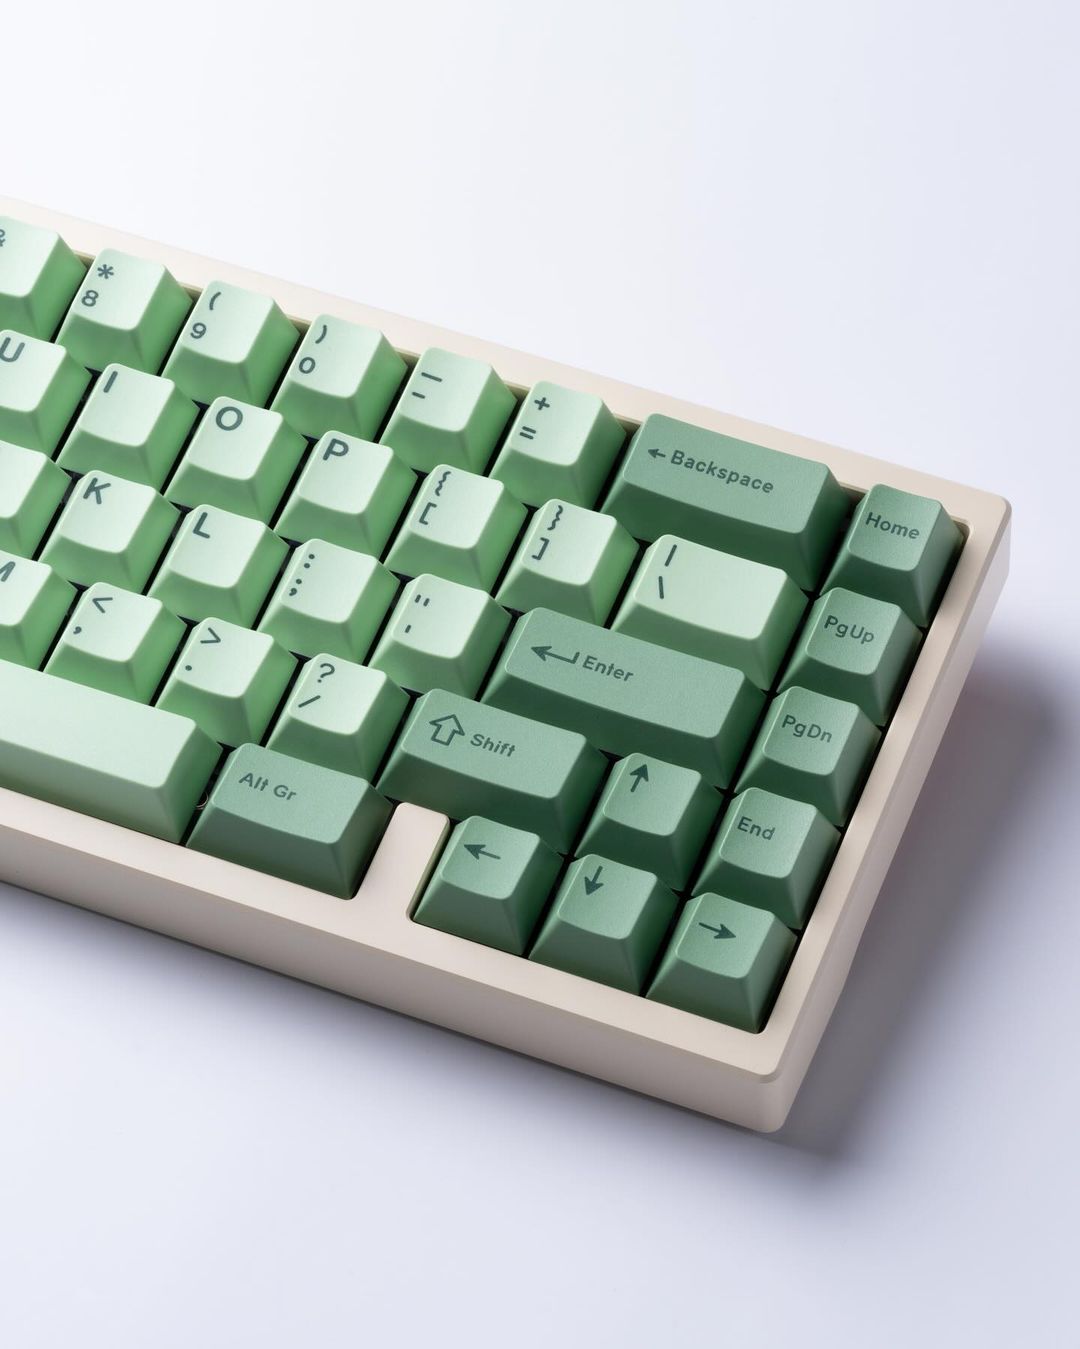 Krush65 Keyboard Kit